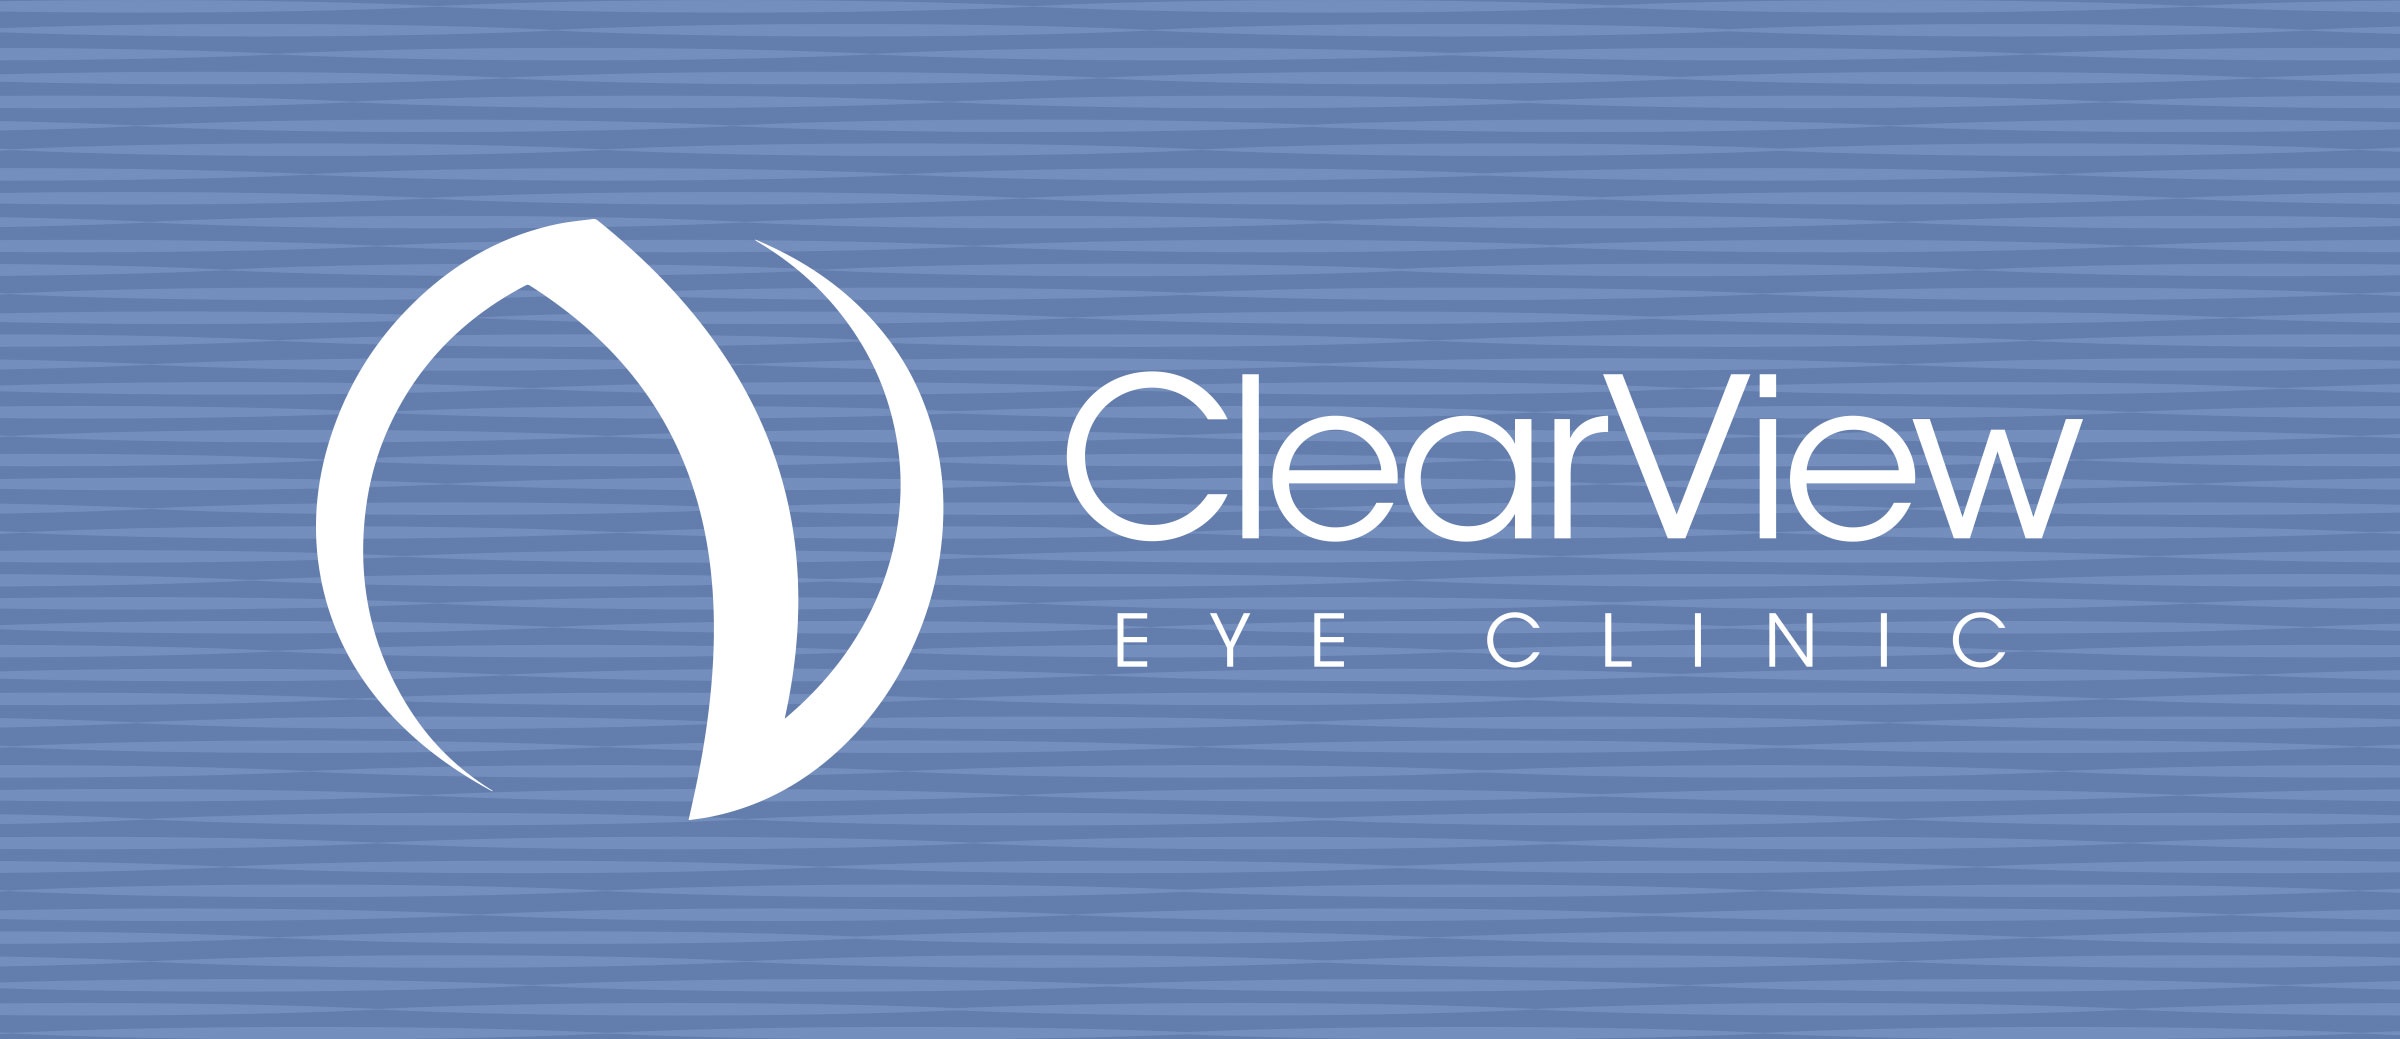 cv-eyes-banner